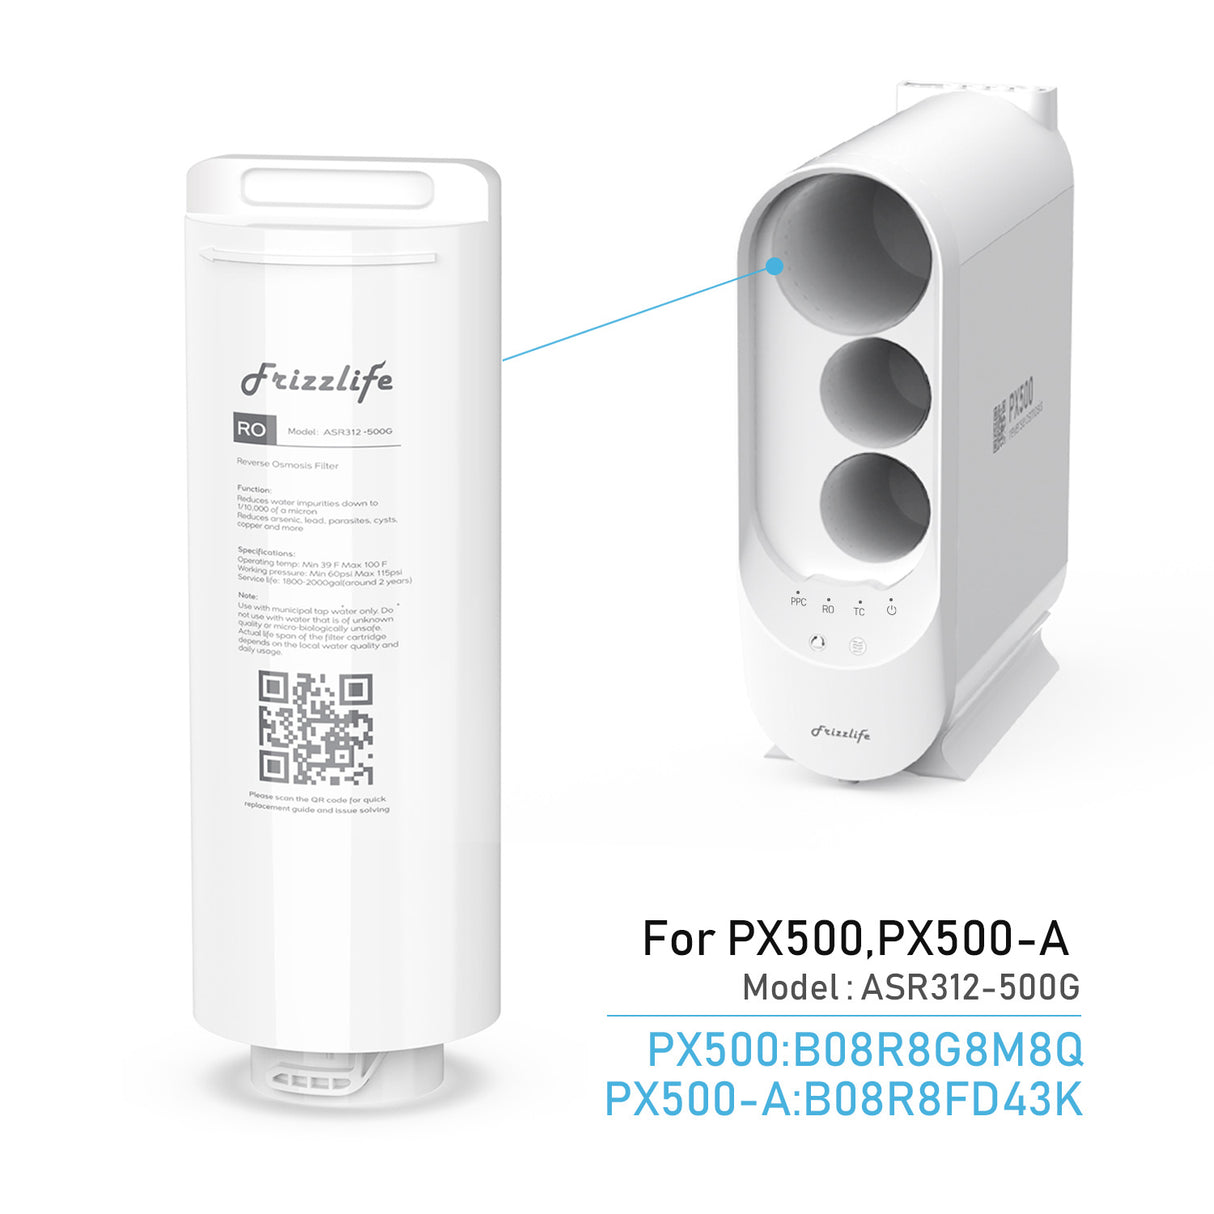 FRIZZLIFE ASR312-500G RO Cartouche filtrante de rechange pour PX500, PX500-A (2e étage) 